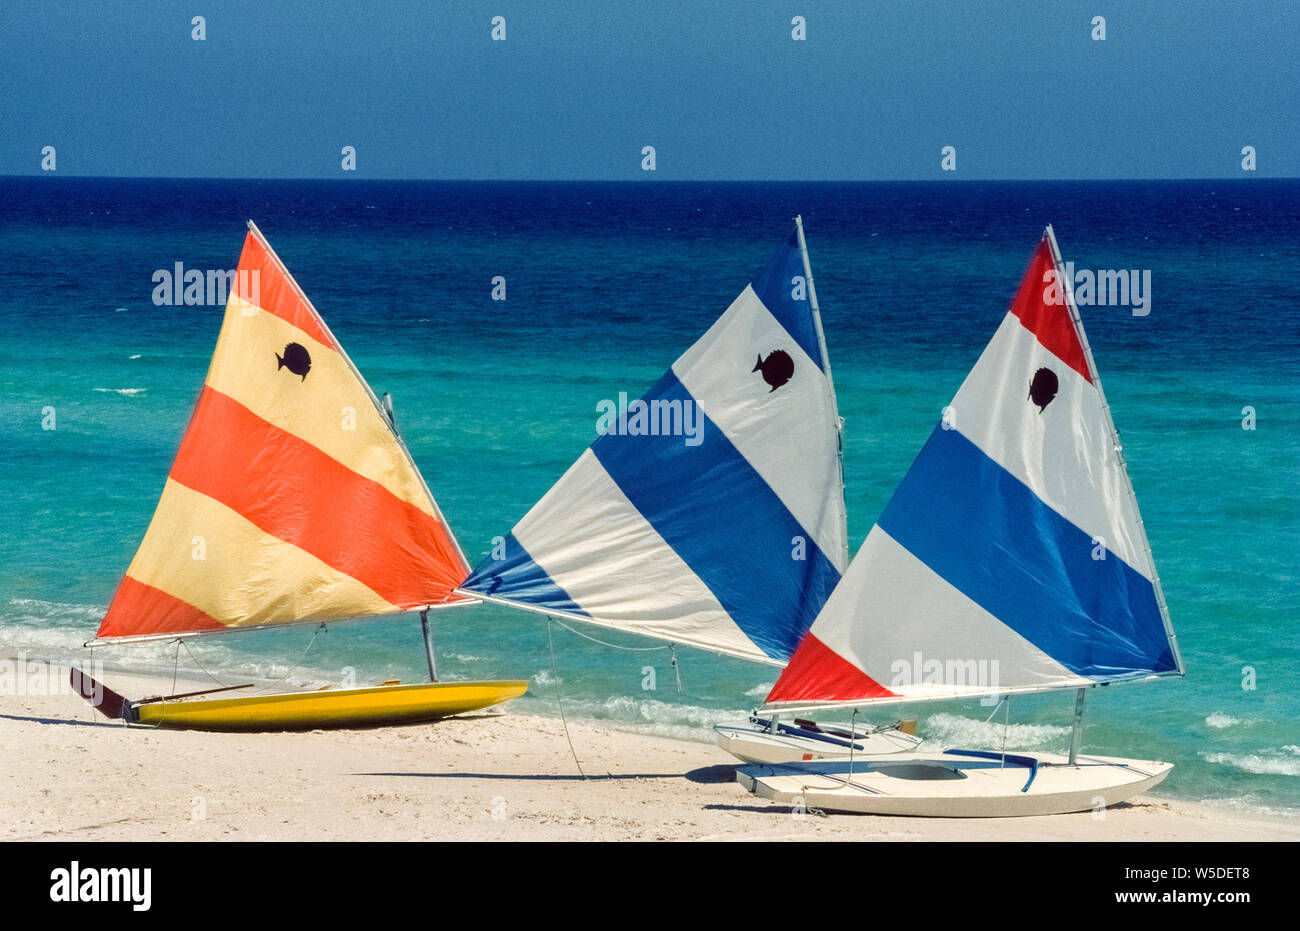 Drei kleine Segelboote Rest an den Rand des Wassers, während für Urlauber am Golf von Mexiko Küste in Panama Beach in den Panhandle von Florida, USA zu vermieten. Marke - namens 'Sunfish' von der Bootsbauer, die eine Person Fiberglas segeln Handwerk sind bequem mit dem Emblem der amerikanischen Firma auf Ihrer hell gestreifte Segel identifiziert. Mit einem breiten flachen Rumpf und dreieckige Segel, die leichte Schiffe sind leicht zu manövrieren und sind ein Liebling der Novize sailboaters. Seit 1952 eingeführt wurden, Sunfish haben Beliebt auf der ganzen Welt geworden und haben sogar international racing Wettbewerbe. Stockfoto